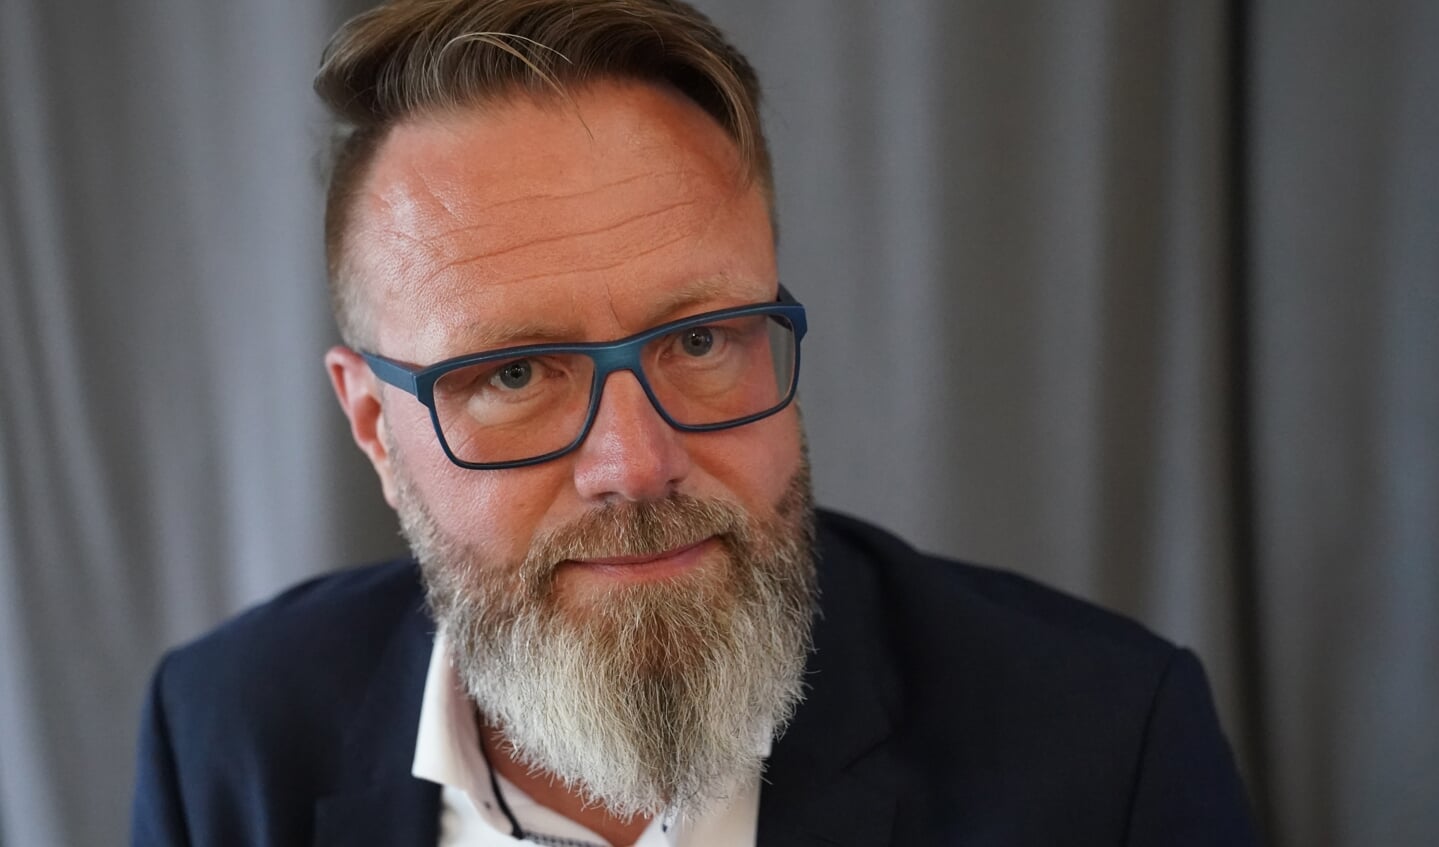 Den 49-årige Claus Ruhe Madsen er den første danske statsborger, som bliver minister i en tysk delstat. Og som han understreger, er det ikke en chance, som man kan regne med at få igen. Særligt når det gælder om at gøre en forskel for den grønne omstilling.